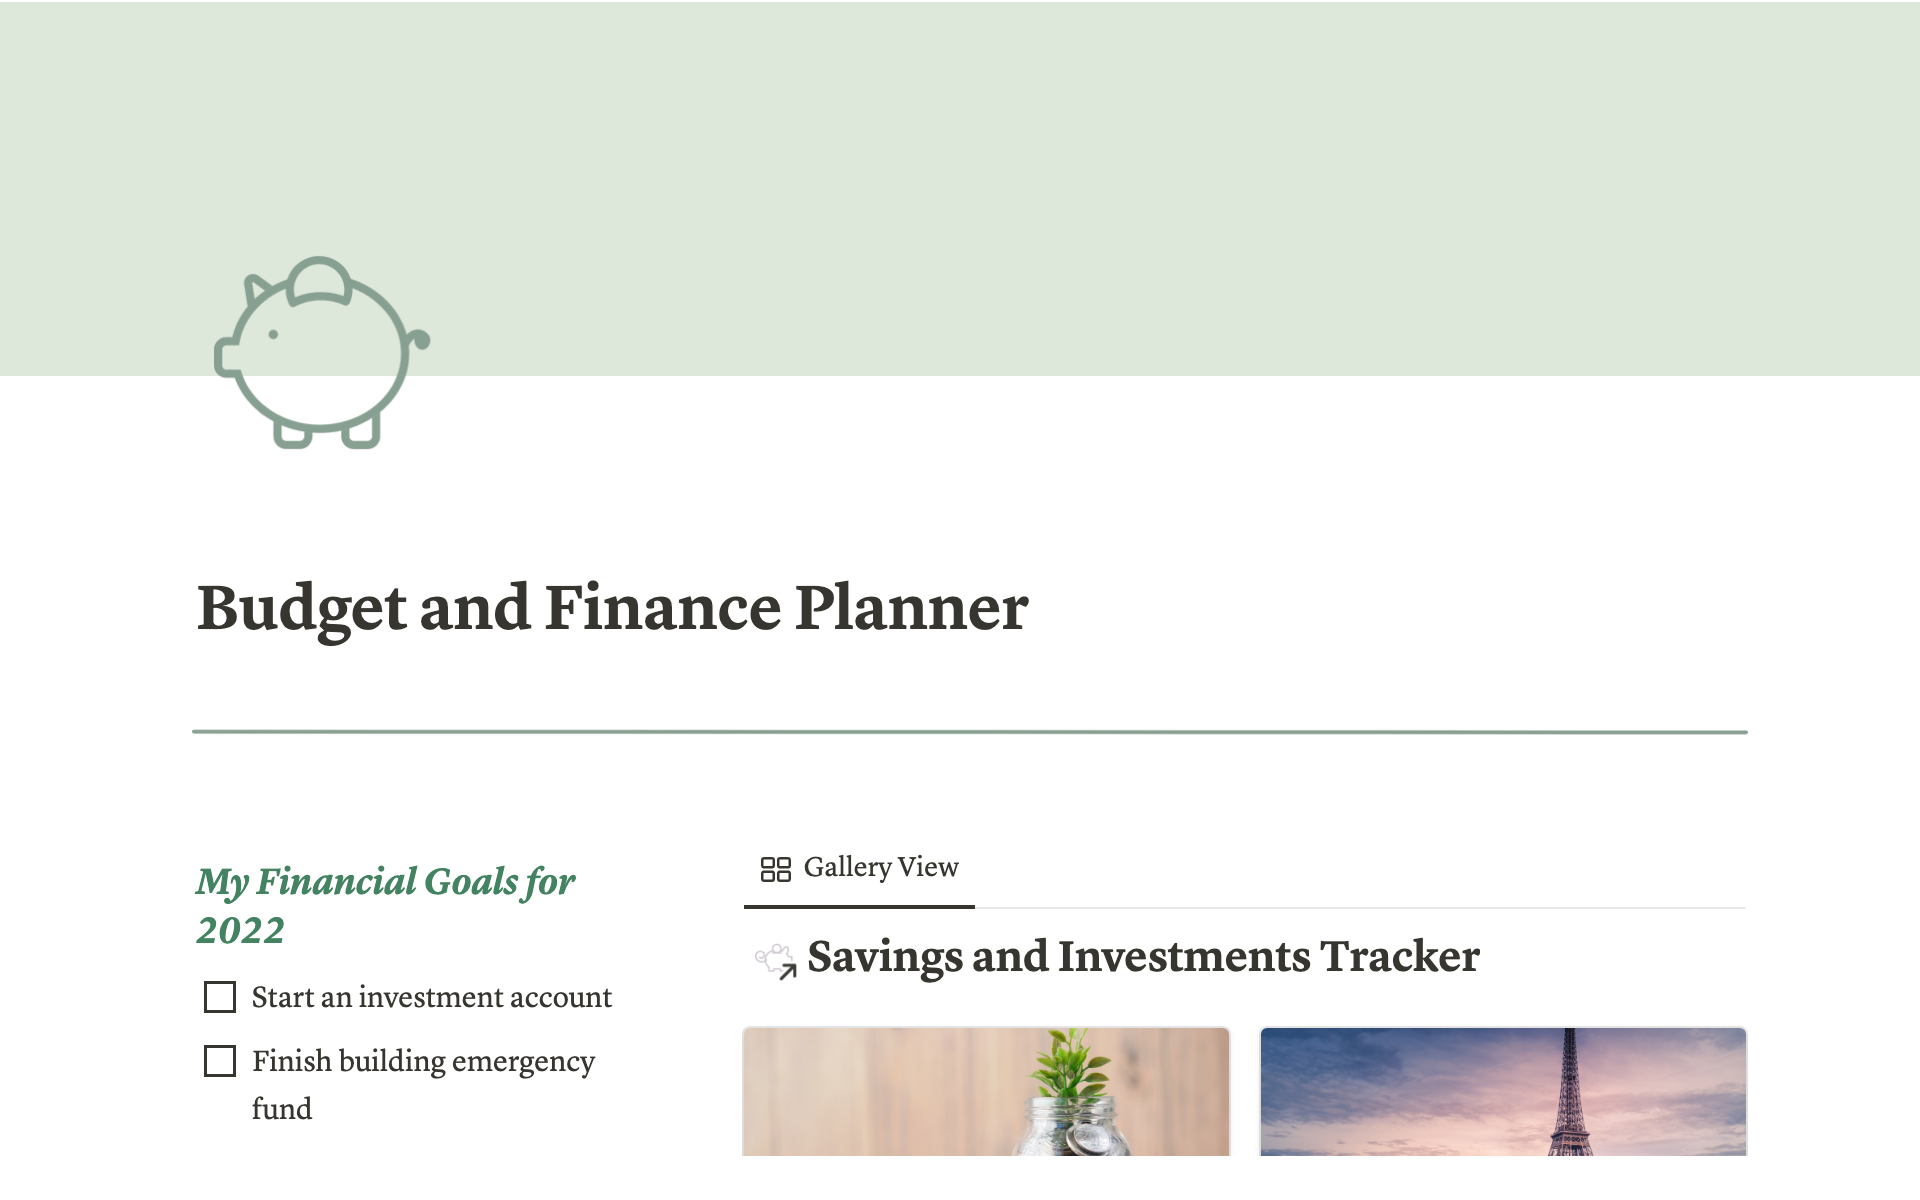 Budget and finance plannerのテンプレートのプレビュー